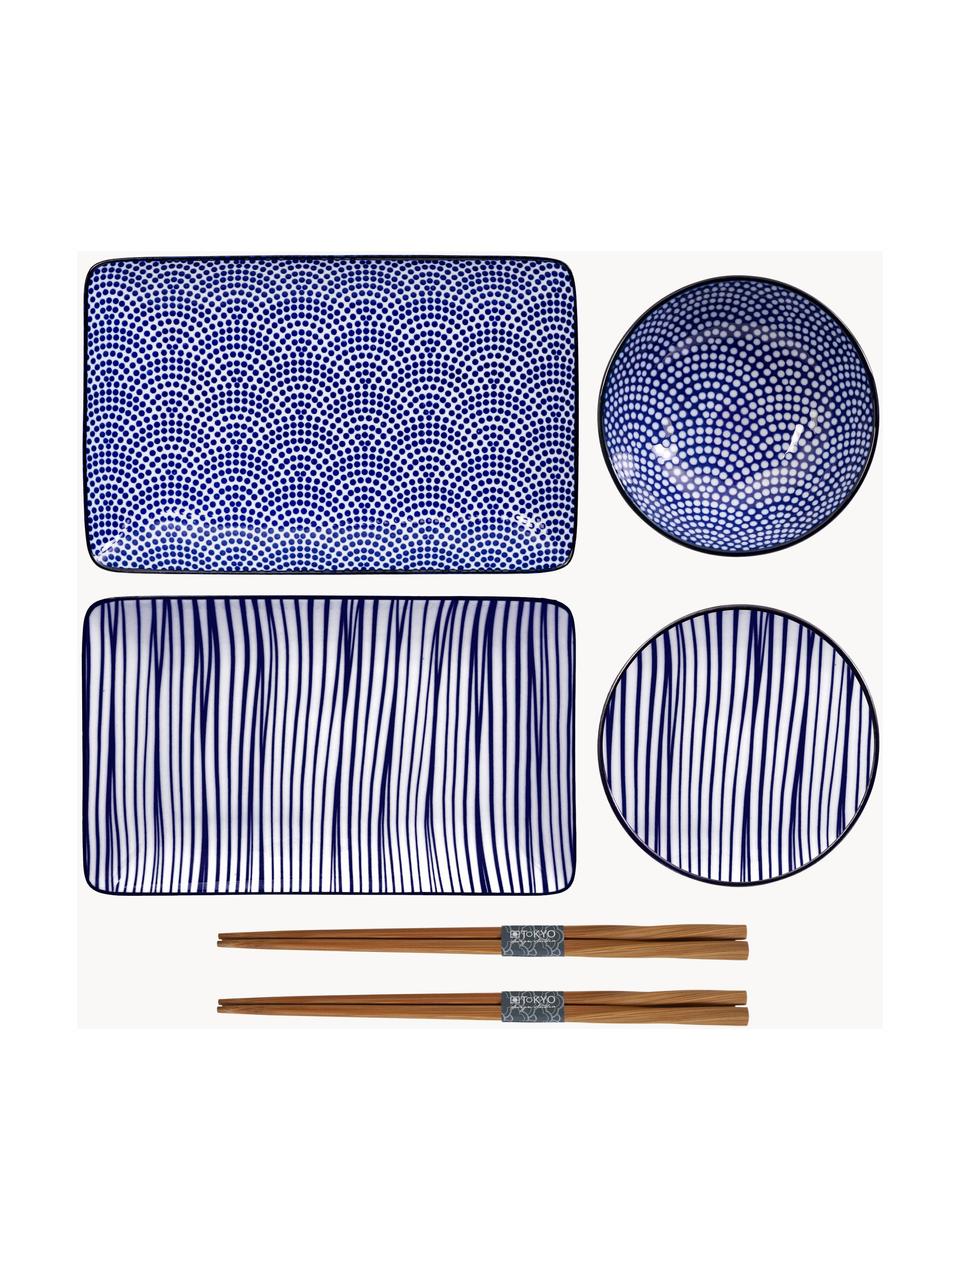 Sada ručně vyrobeného porcelánového nádobí s jídelními hůlkami Nippon, pro 2 osoby (6 kusů), Modrá, bílá, tmavé dřevo, Sada s různými velikostmi